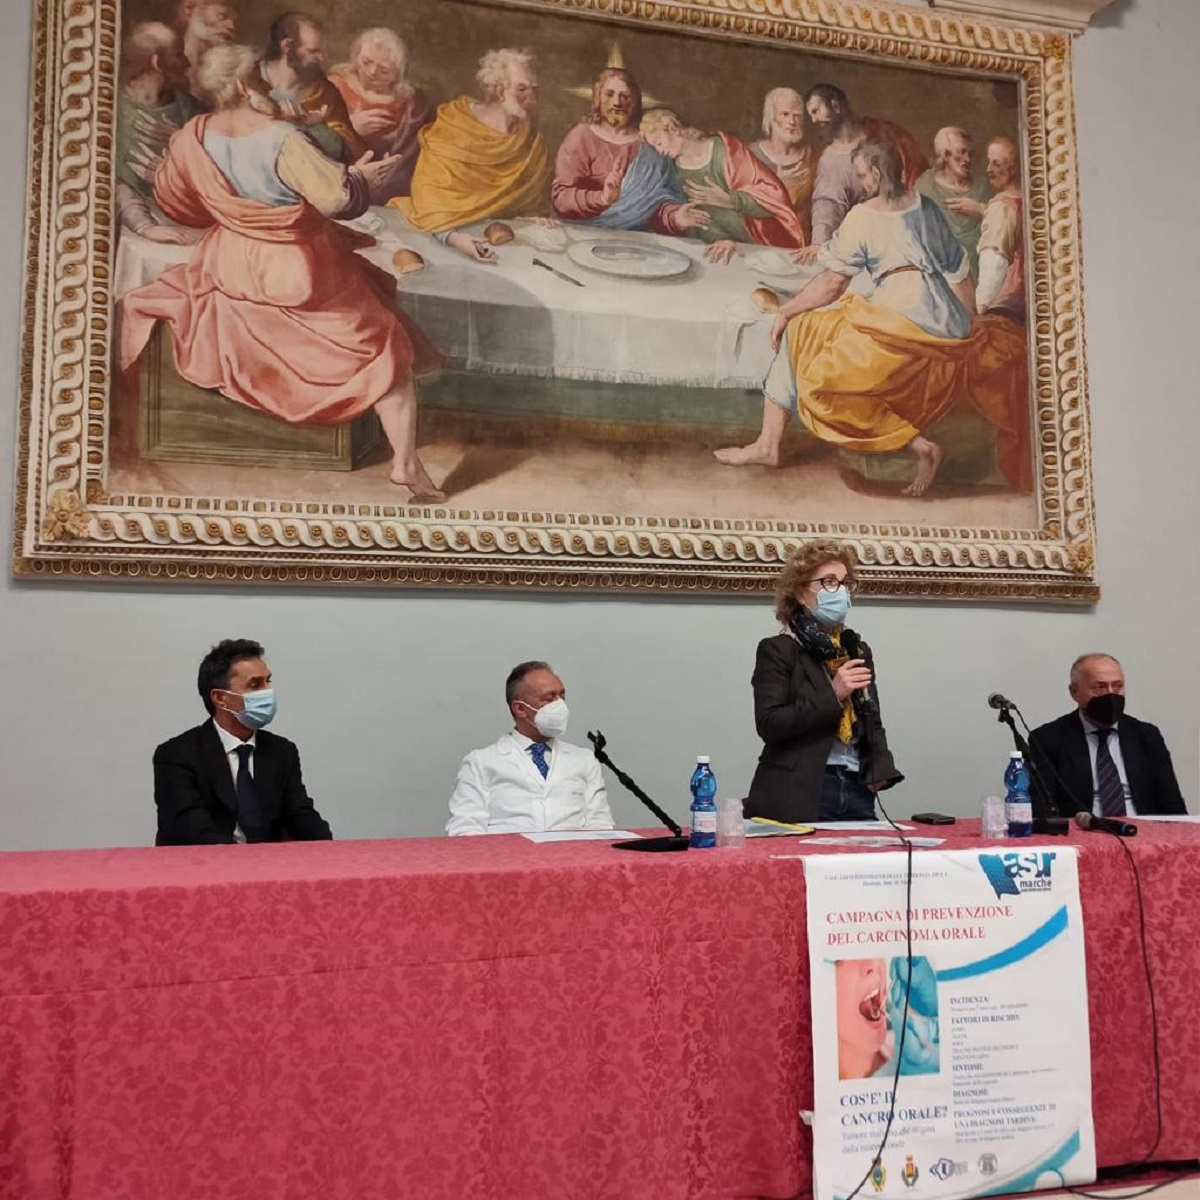 La conferenza per la prevenzione del carcinoma orale: da sinistra il sindaco Moreno Pieroni, il dottor Marco Messi, la dottoressa Nadia Storti e l'assessore regionale Filippo Saltamartini